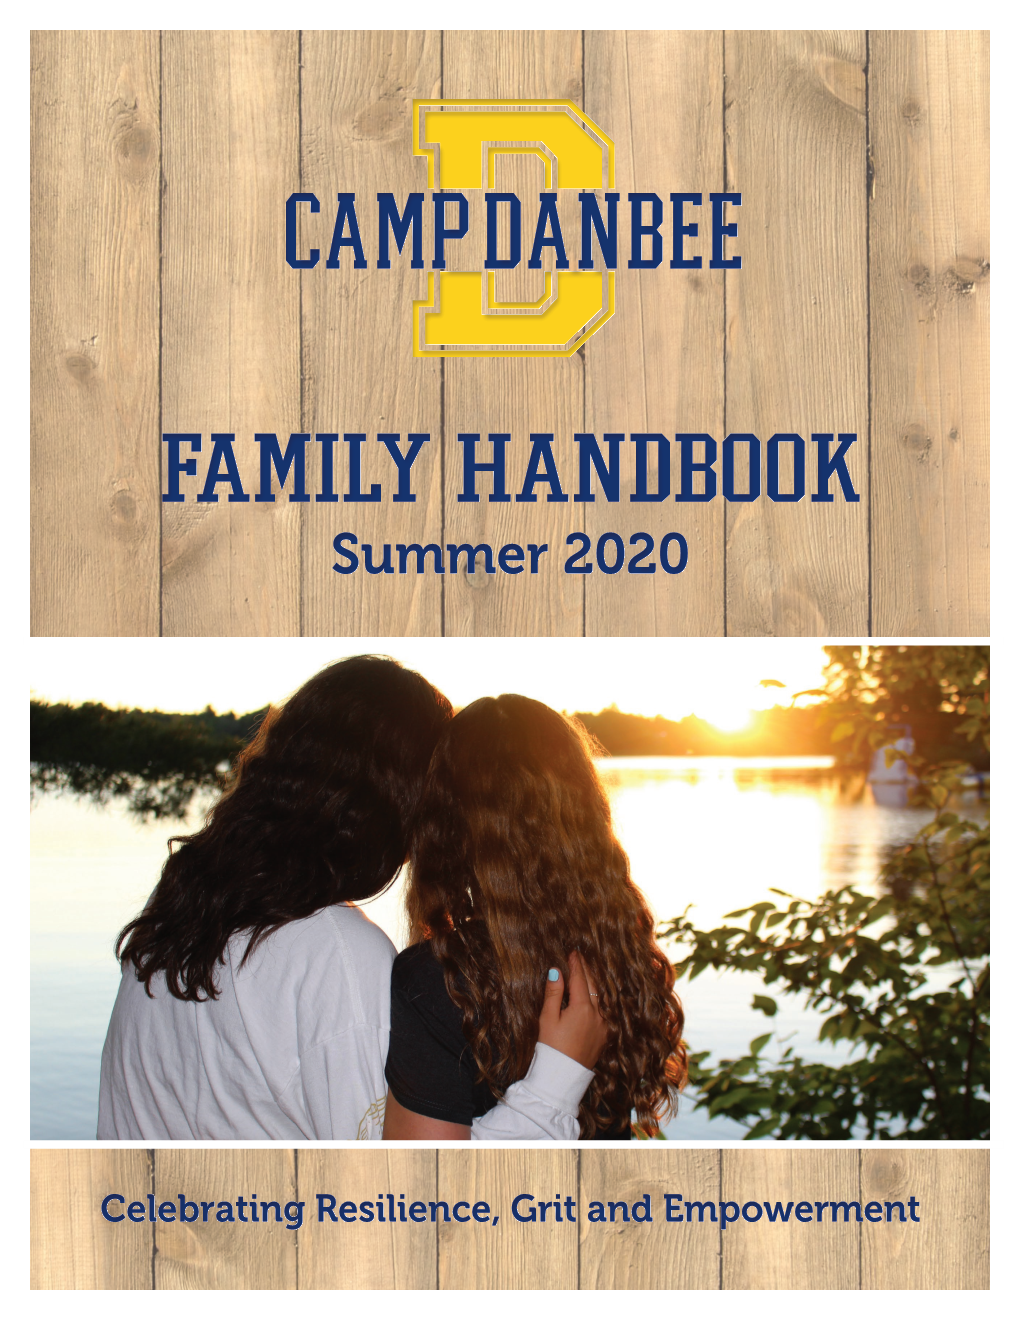 Family Handbook Family Handbook